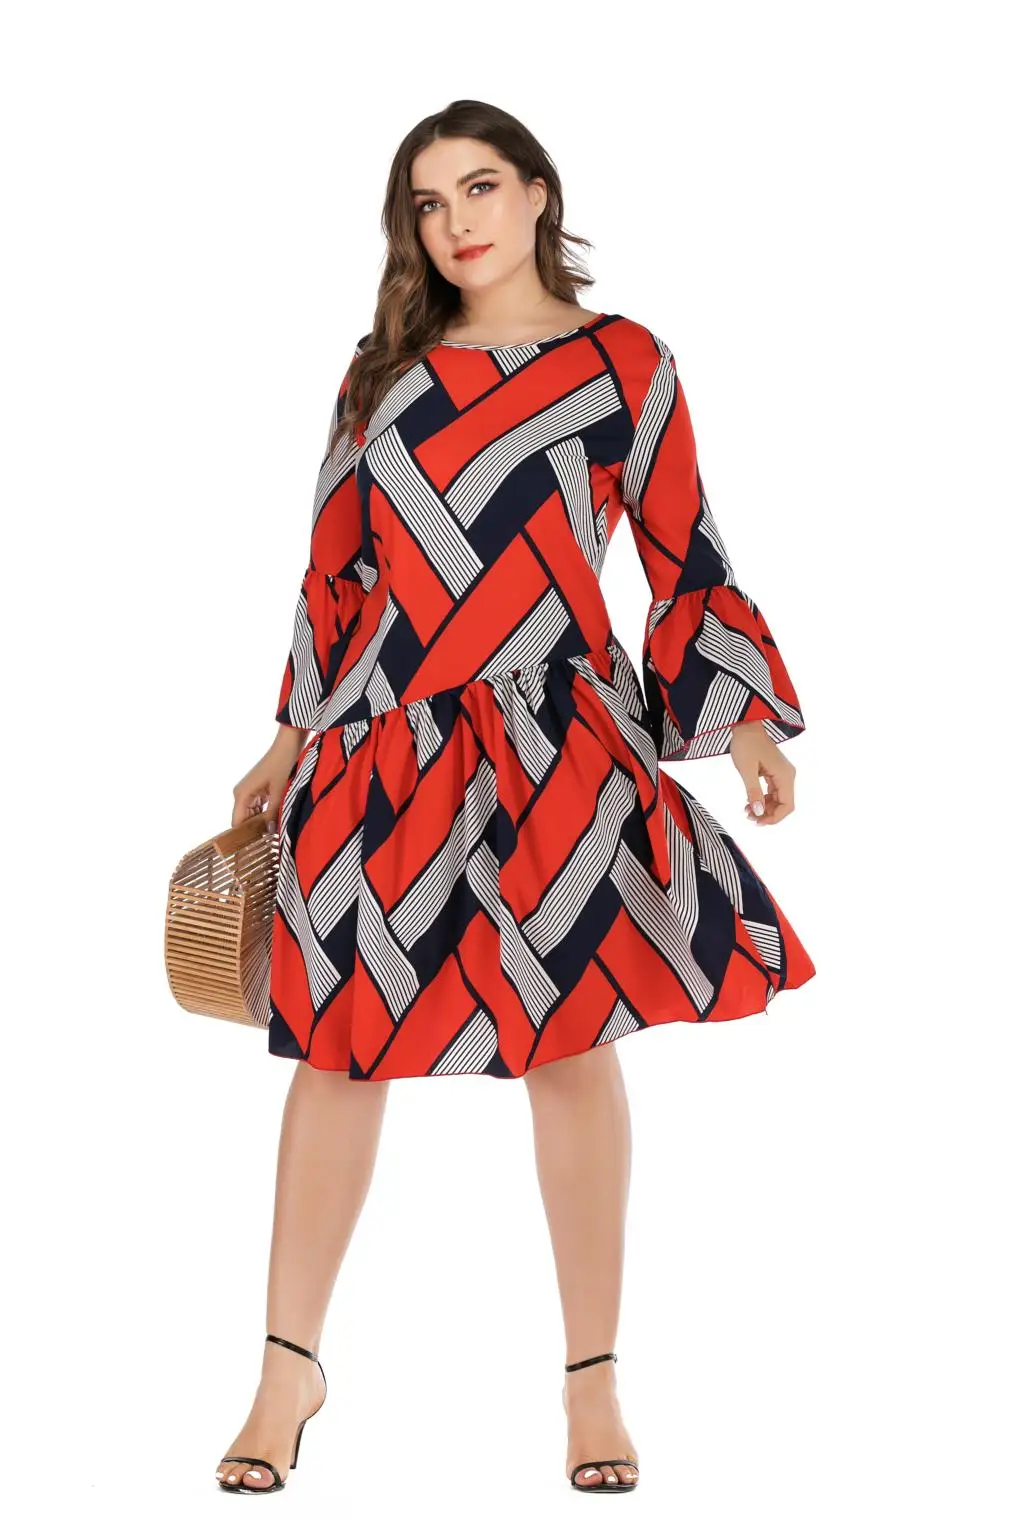 5XL размера плюс Повседневное платье женское с длинным рукавом клетчатое Полосатое платье средней длины в стиле пэчворк красное женское туника с оборками пляжные платья